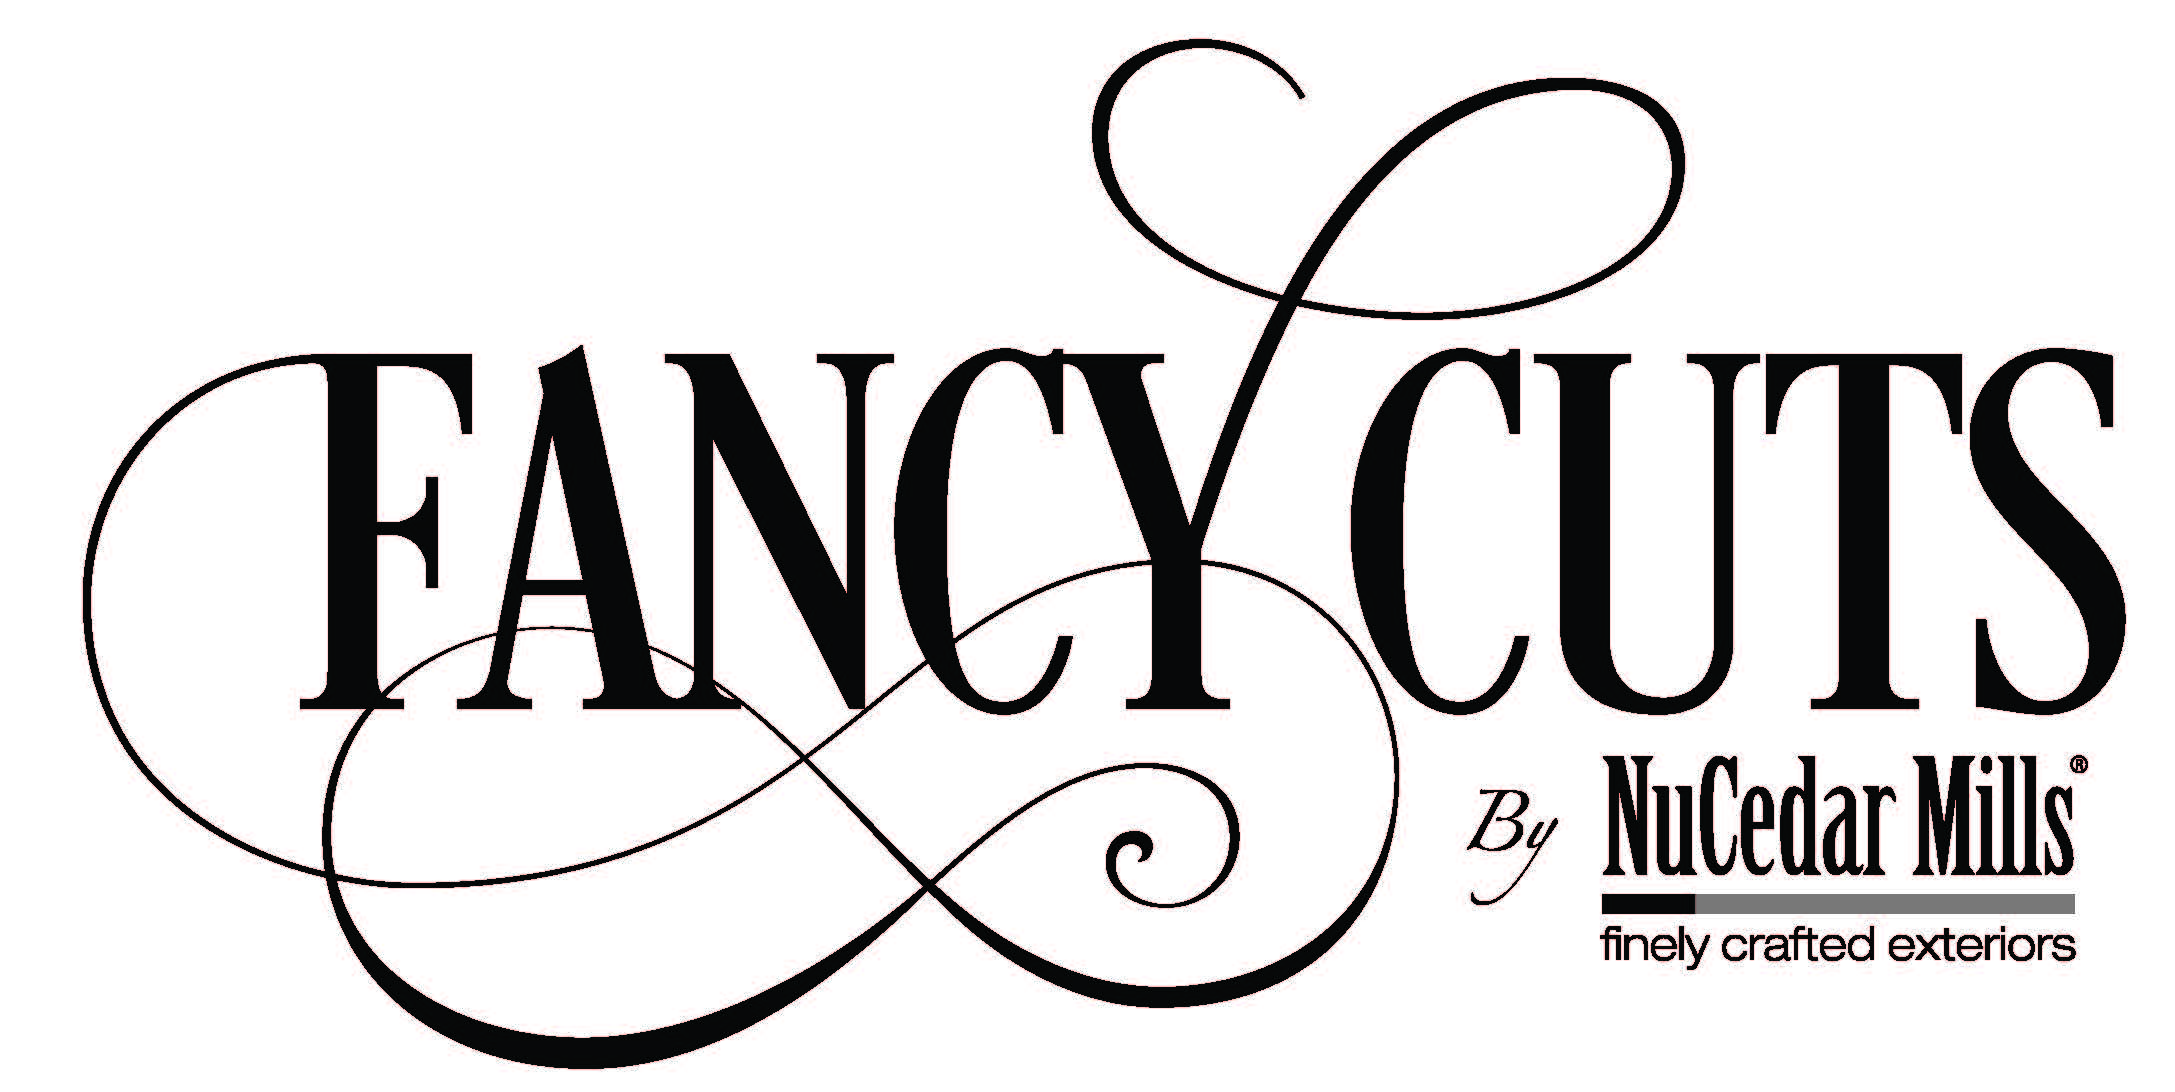 nucedar fancycut logo 122319